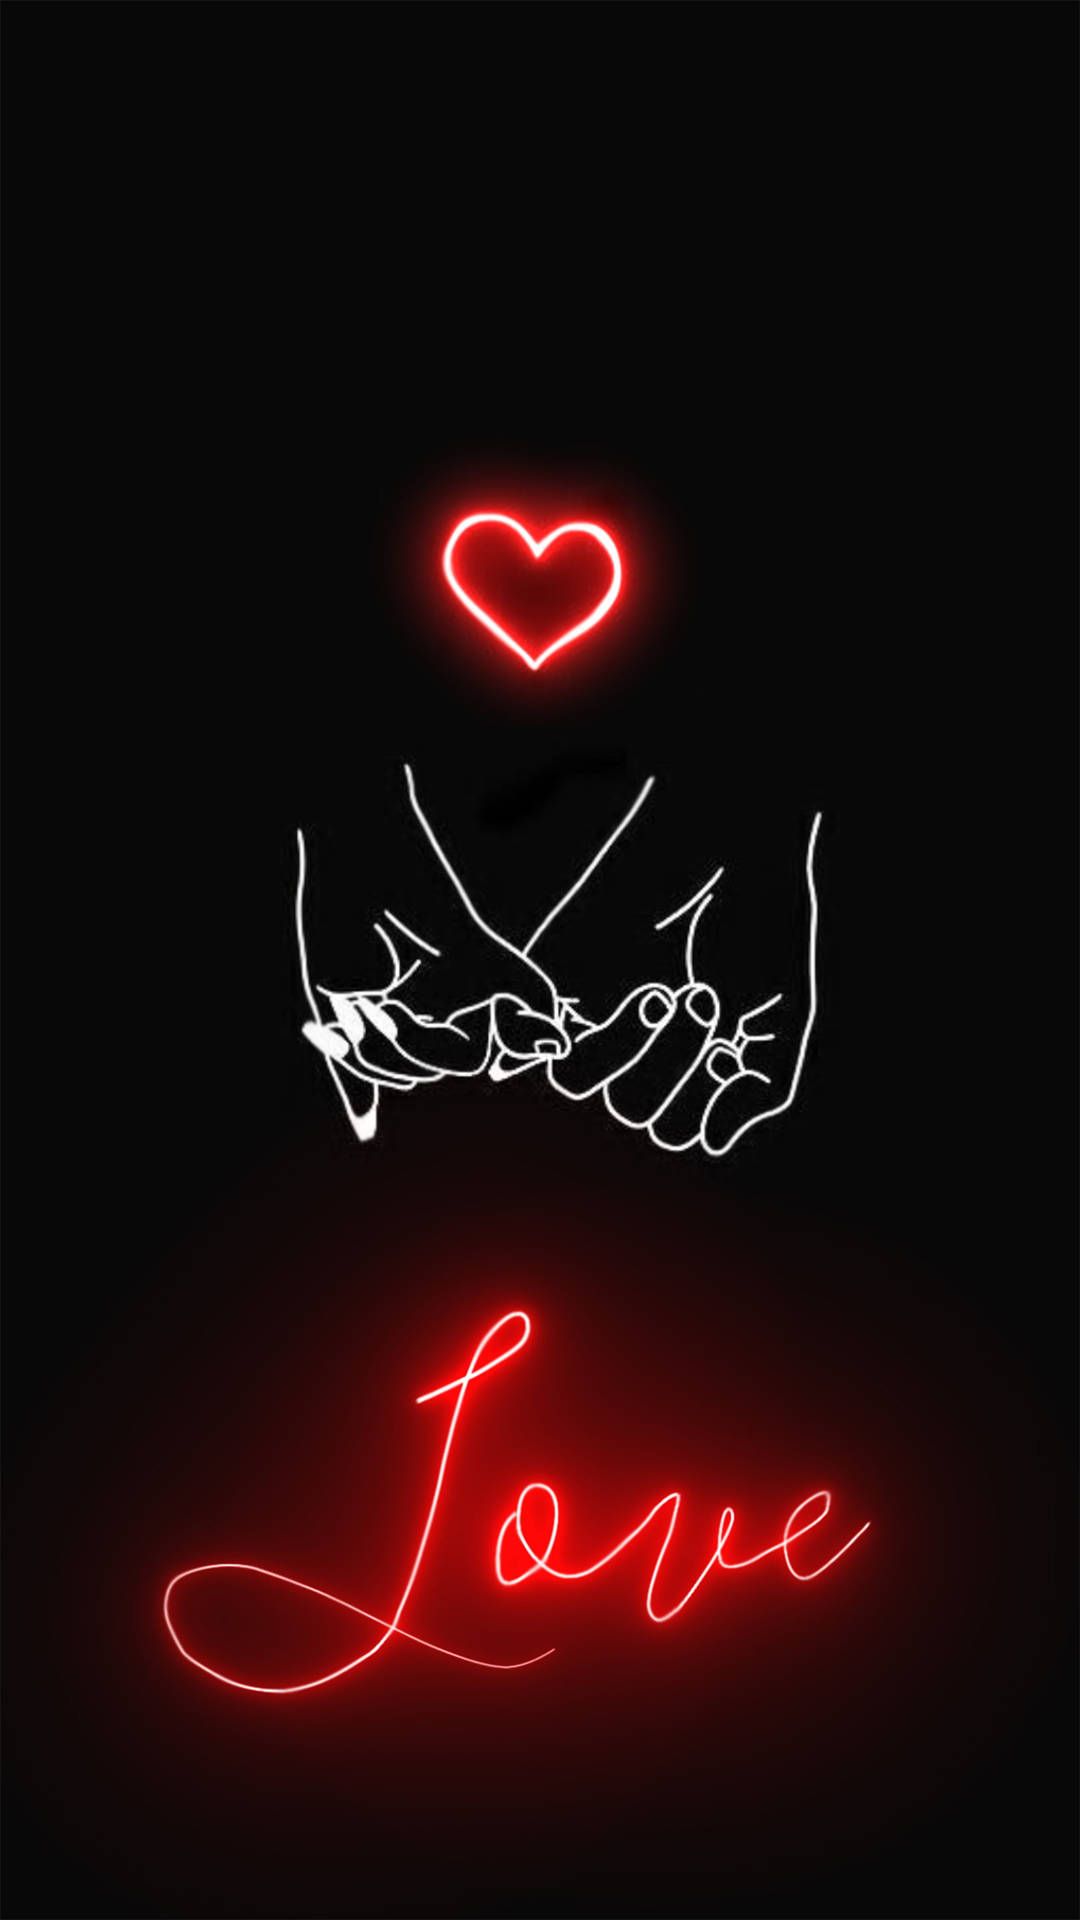 Aesthetic love wallpaper for phone with neon light. - Heart, black heart